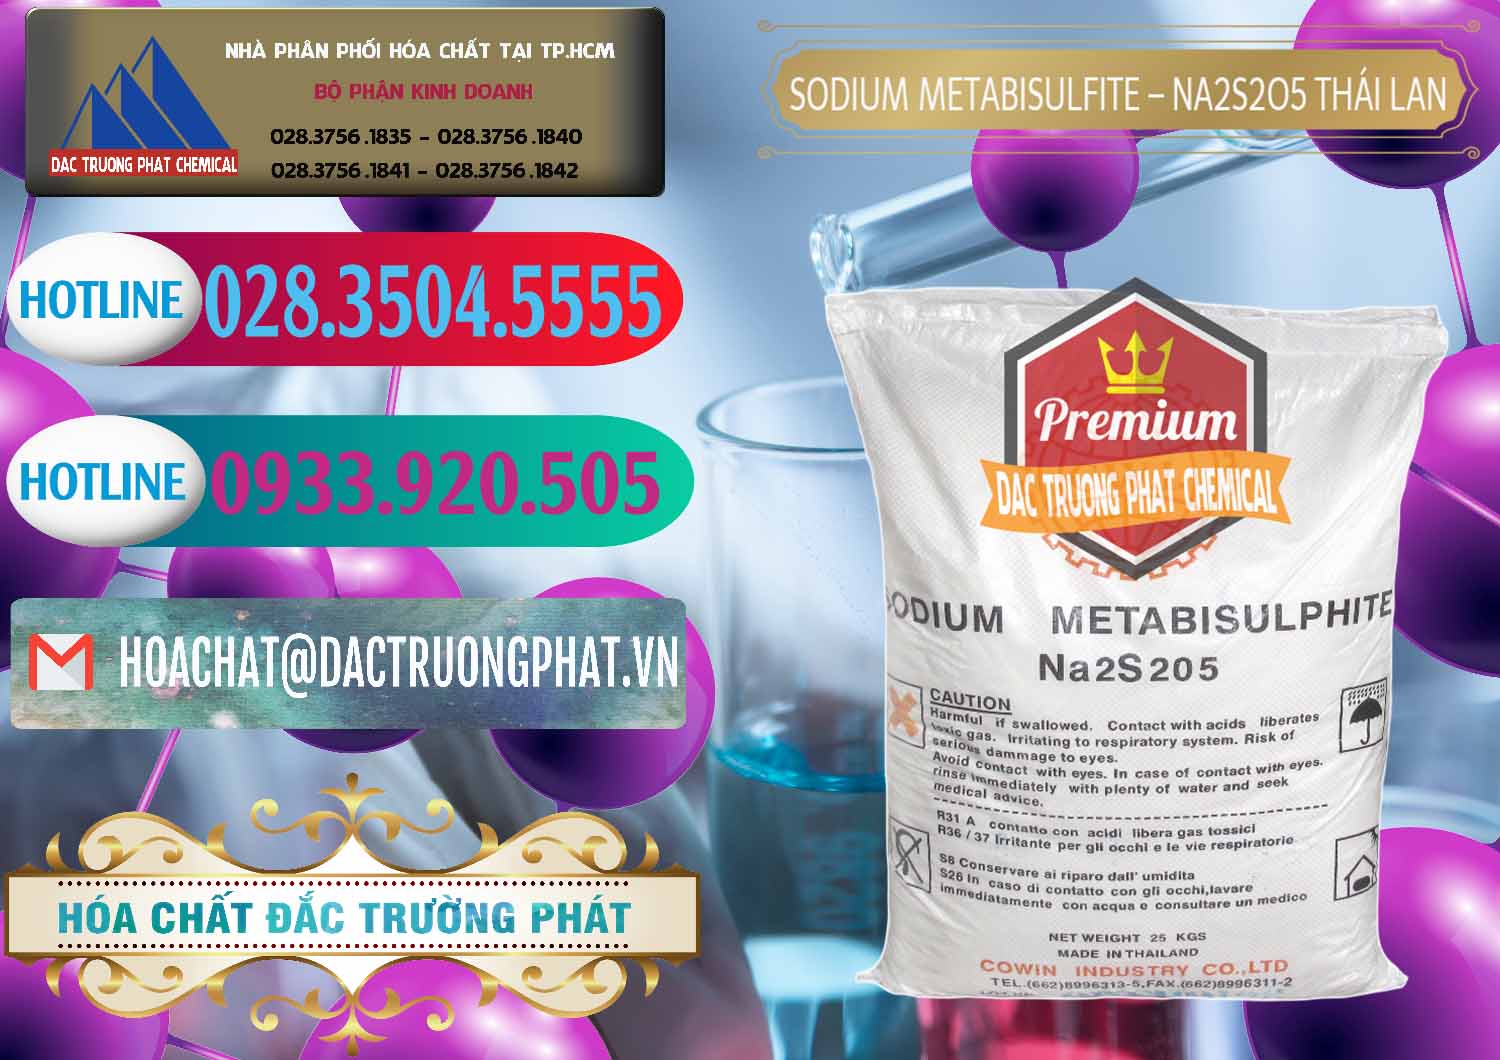 Cty chuyên bán ( cung ứng ) Sodium Metabisulfite - NA2S2O5 Thái Lan Cowin - 0145 - Công ty cung cấp _ phân phối hóa chất tại TP.HCM - truongphat.vn